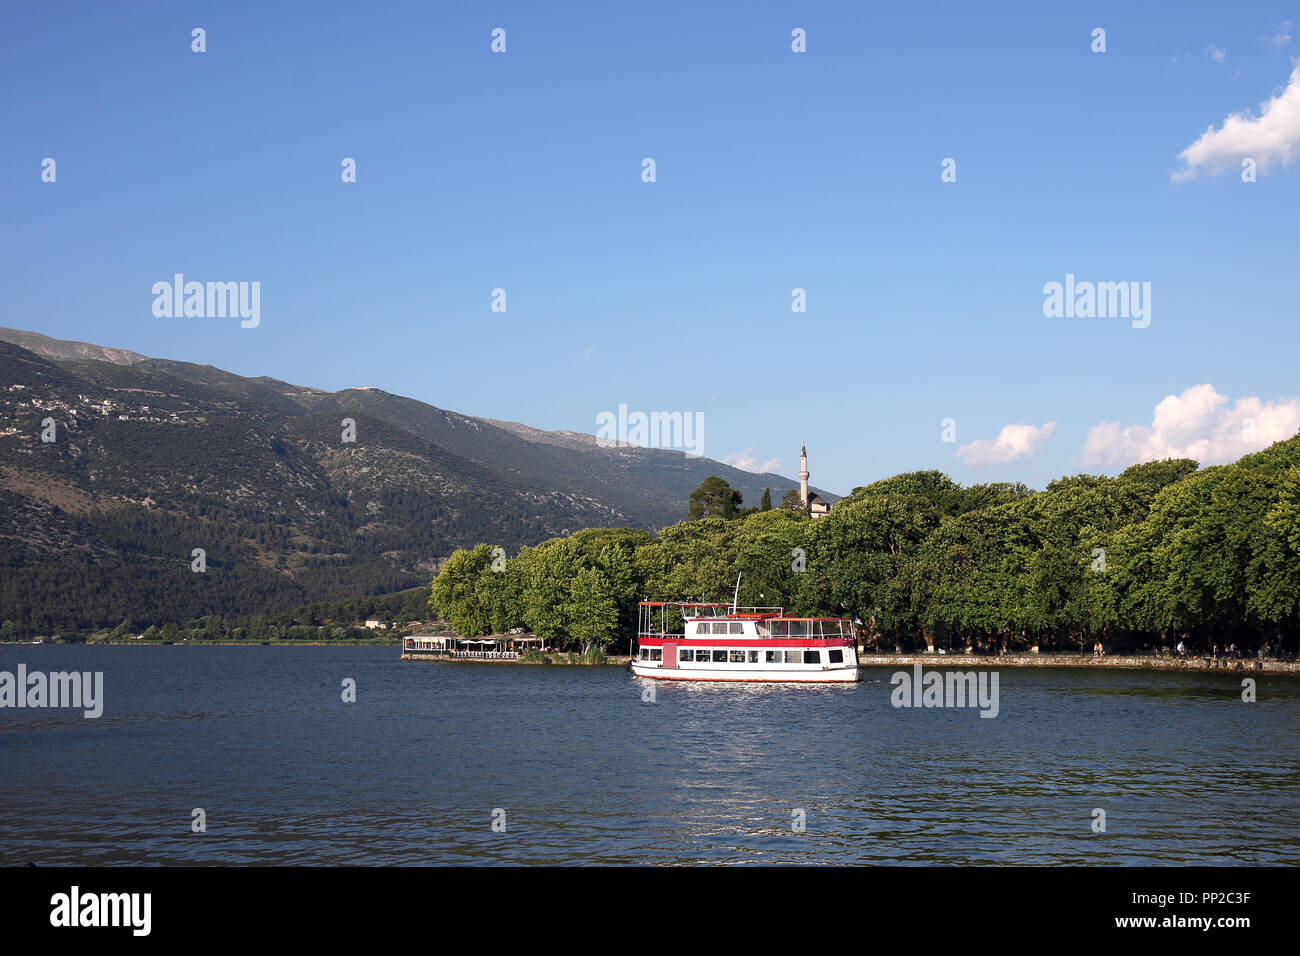 Ioannina city park and lake Greece Stock Photo